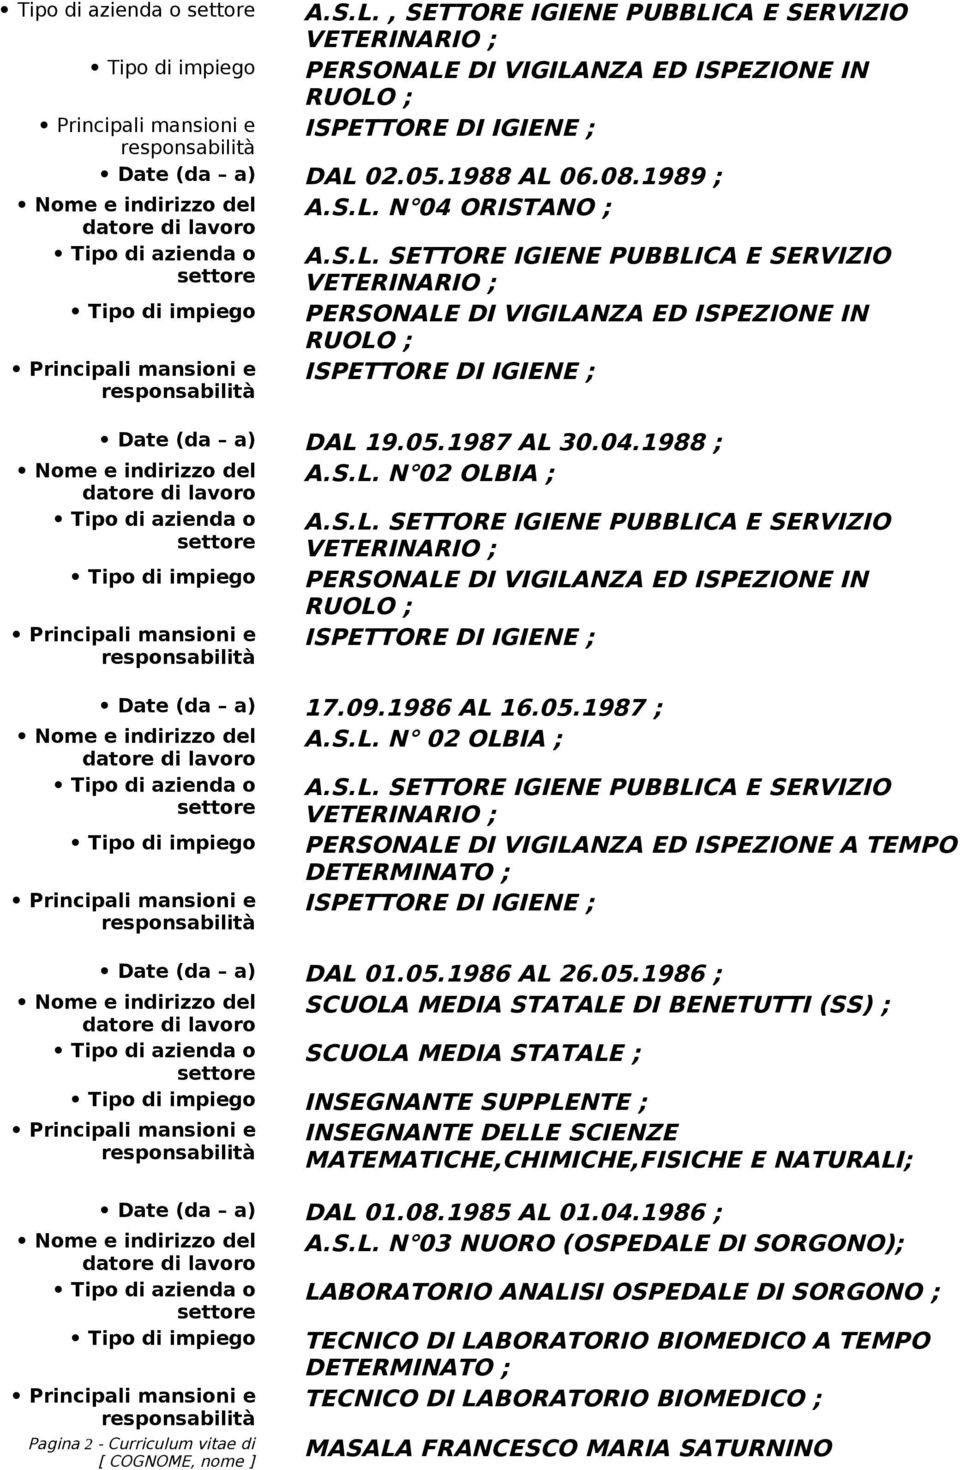 05.1986 AL 26.05.1986 ; SCUOLA MEDIA STATALE DI BENETUTTI (SS) ; SCUOLA MEDIA STATALE ; INSEGNANTE SUPPLENTE ; INSEGNANTE DELLE SCIENZE MATEMATICHE,CHIMICHE,FISICHE E NATURALI; Date (da a) DAL 01.08.